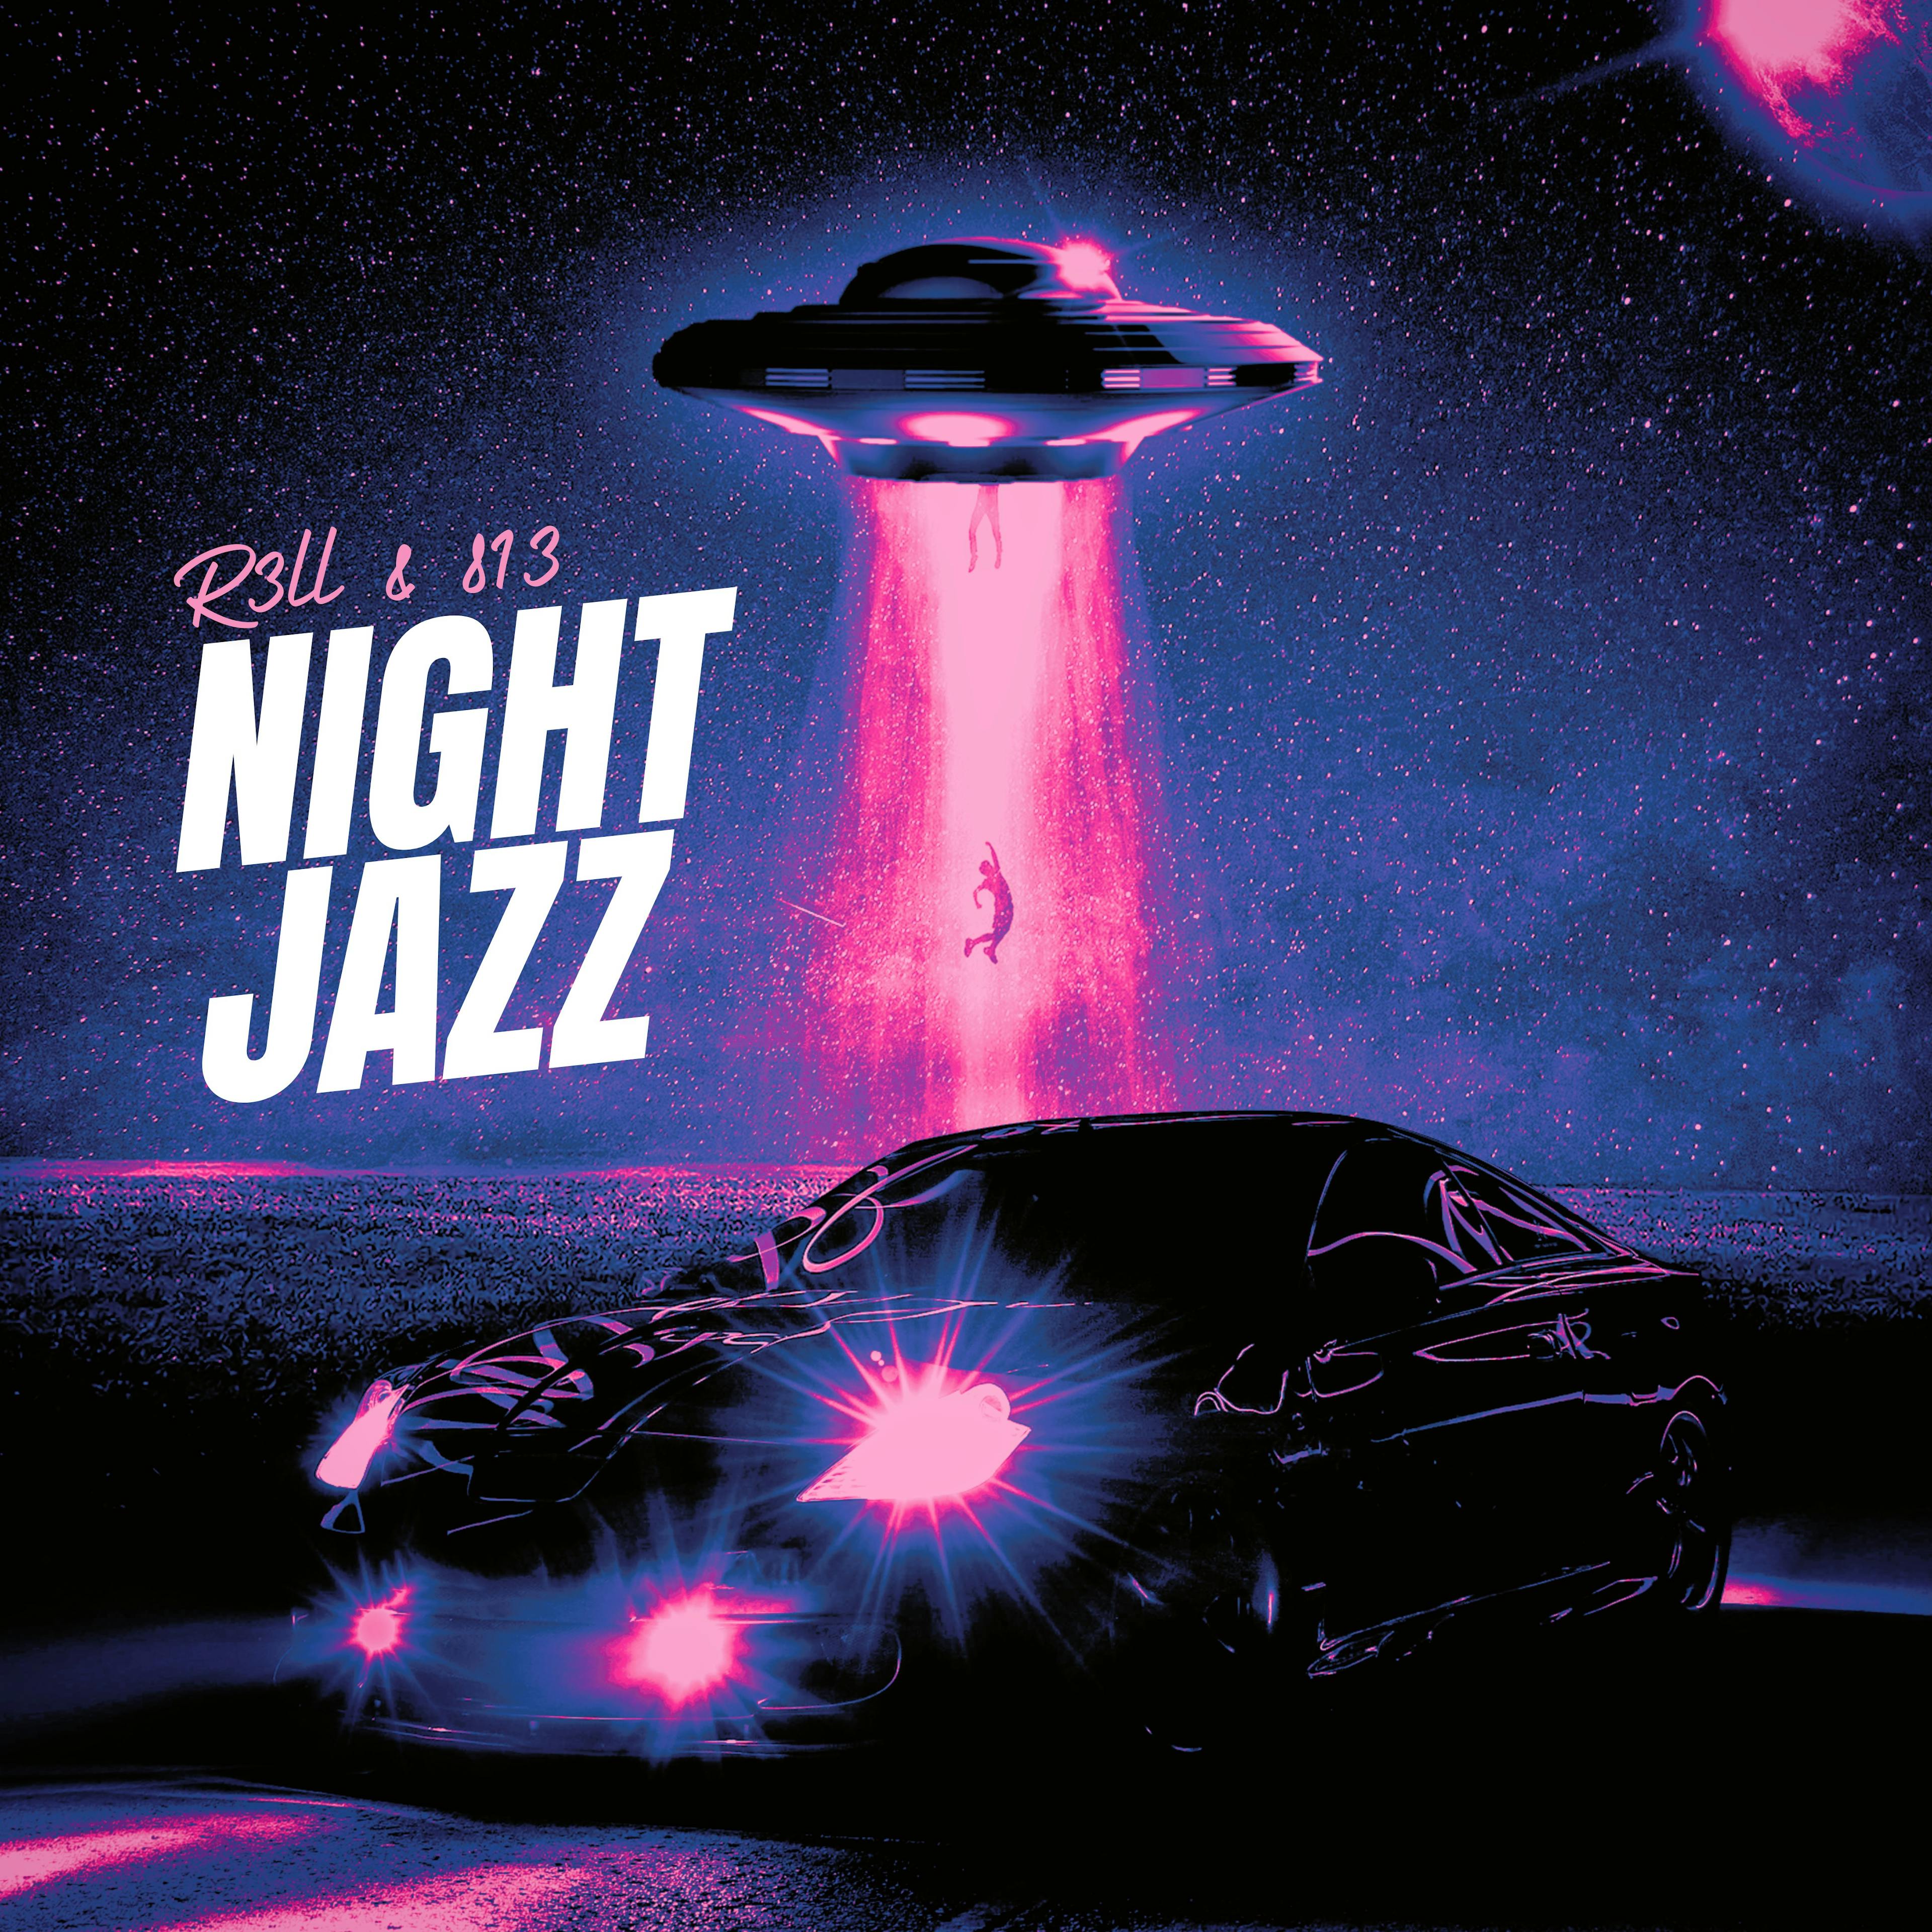 Night Jazz (w/ 813)